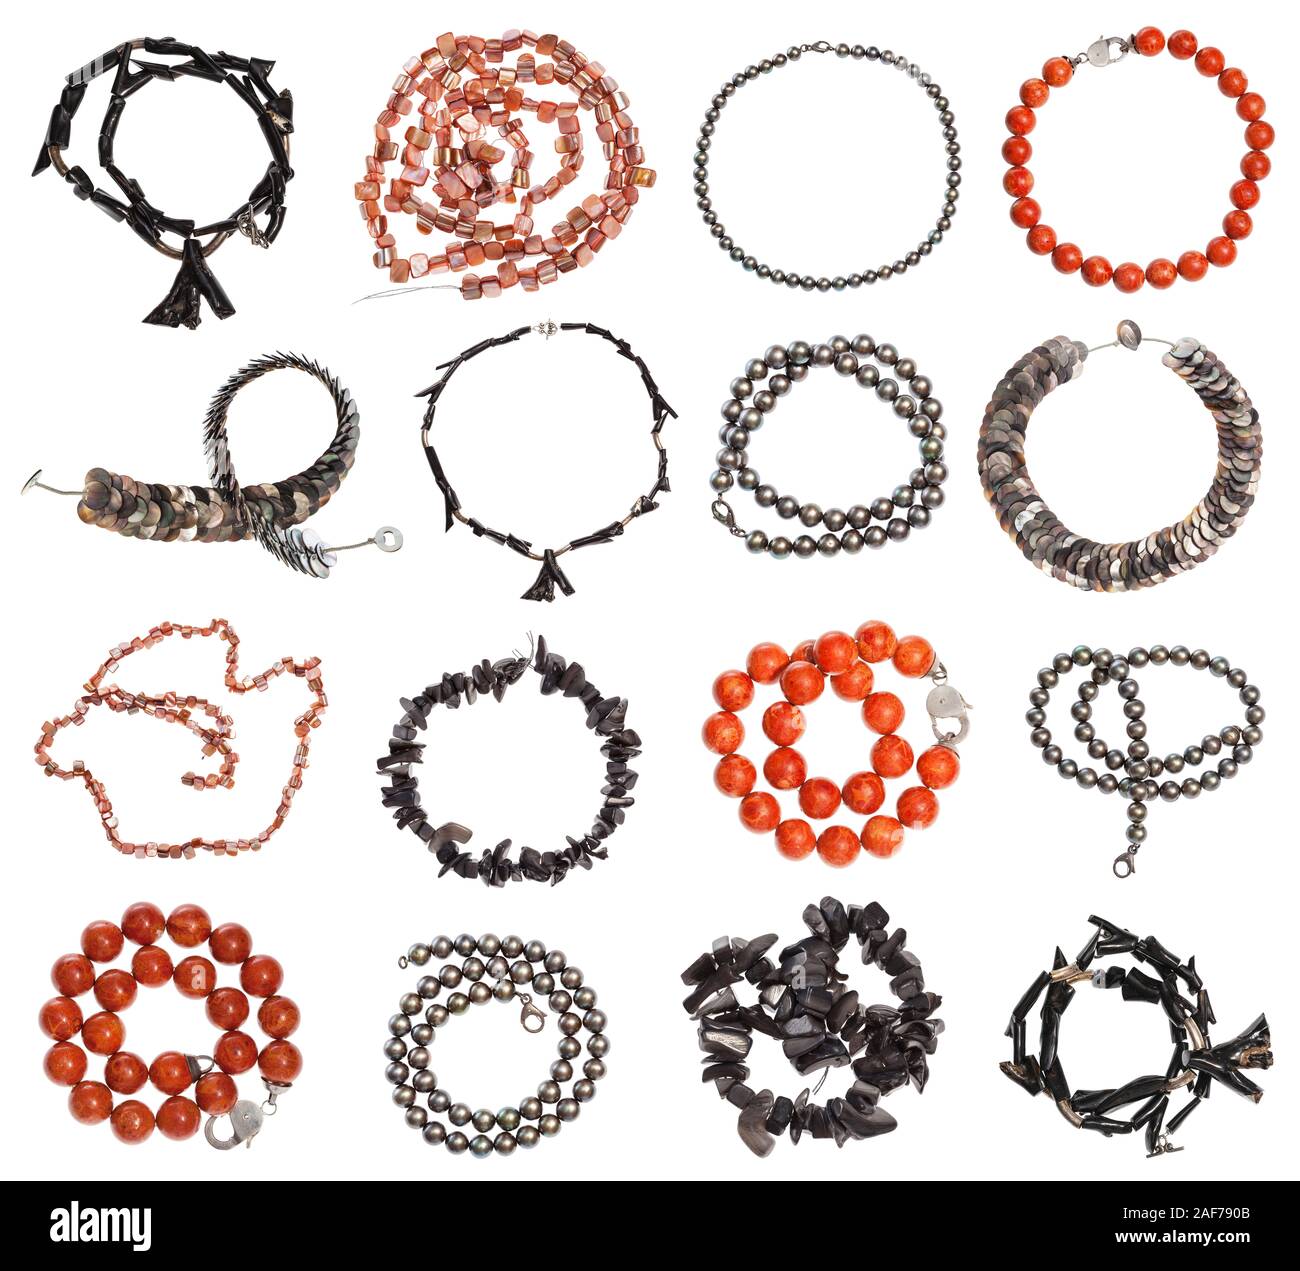 Ensemble de différentes perles, corail, nacre colliers isolé sur fond blanc Banque D'Images